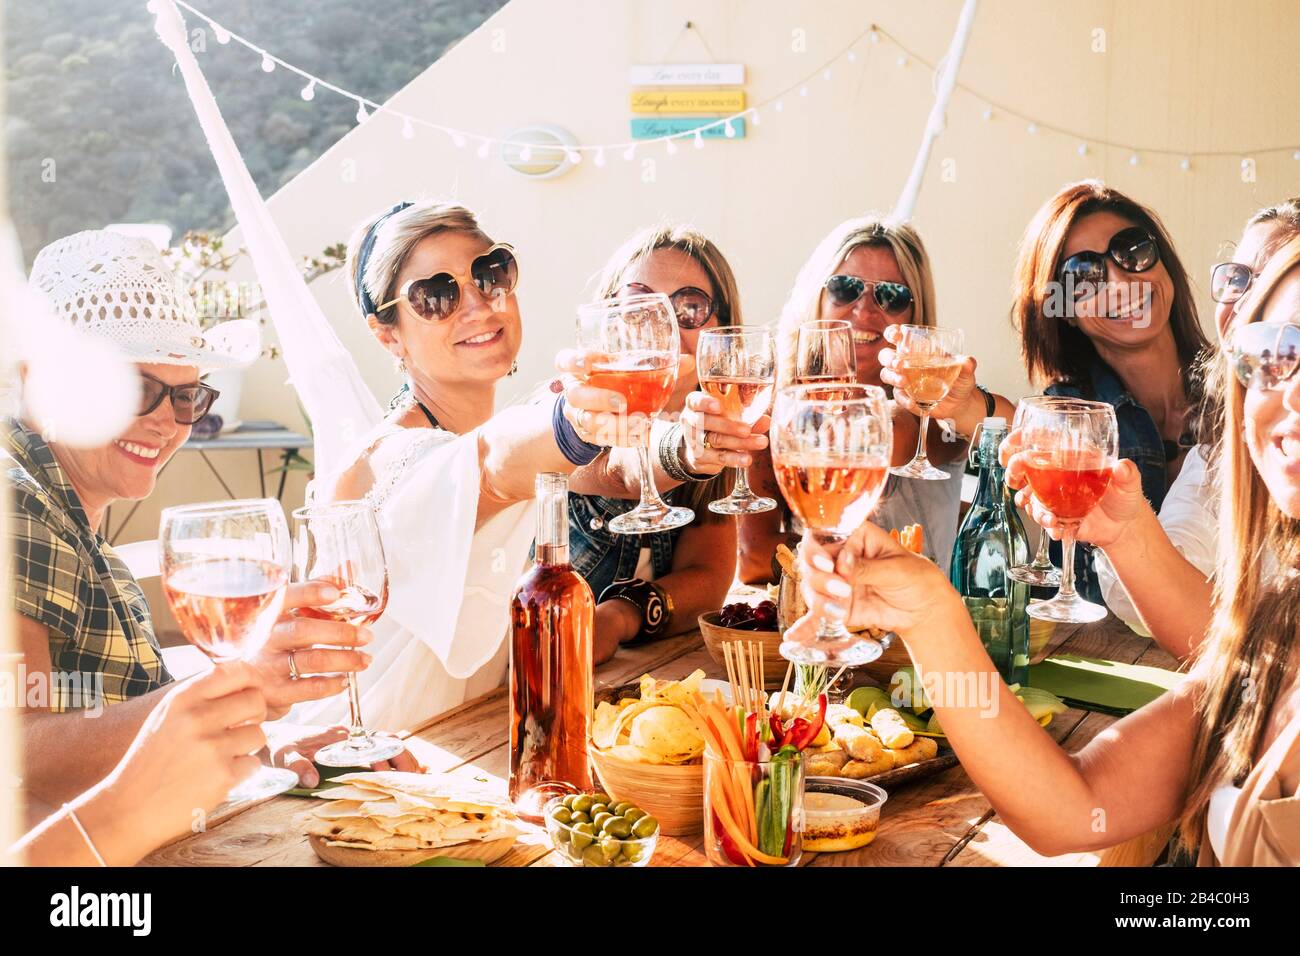 Fröhliche Gruppe glücklicher Frauen, die sich mit Freundschaft und Glück zusammenklattern und toasten - junge und Erwachsene Frauen haben Spaß am Essen - Konzept der Speise- und Getränkefeier Stockfoto